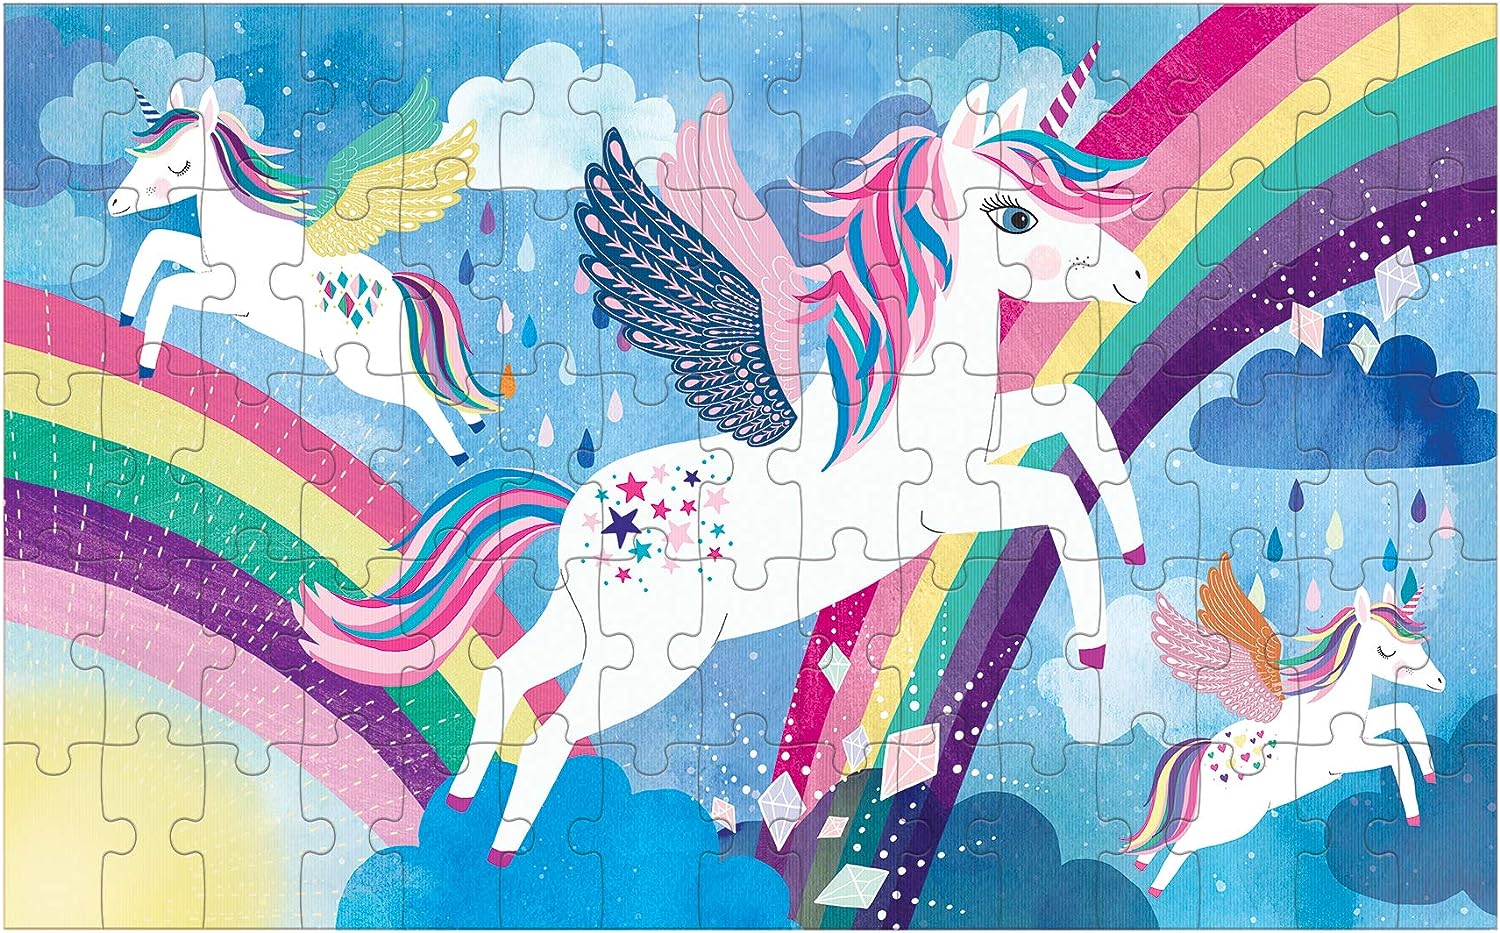 Unicorn Magic 75 Piece Lenticular Puzzle